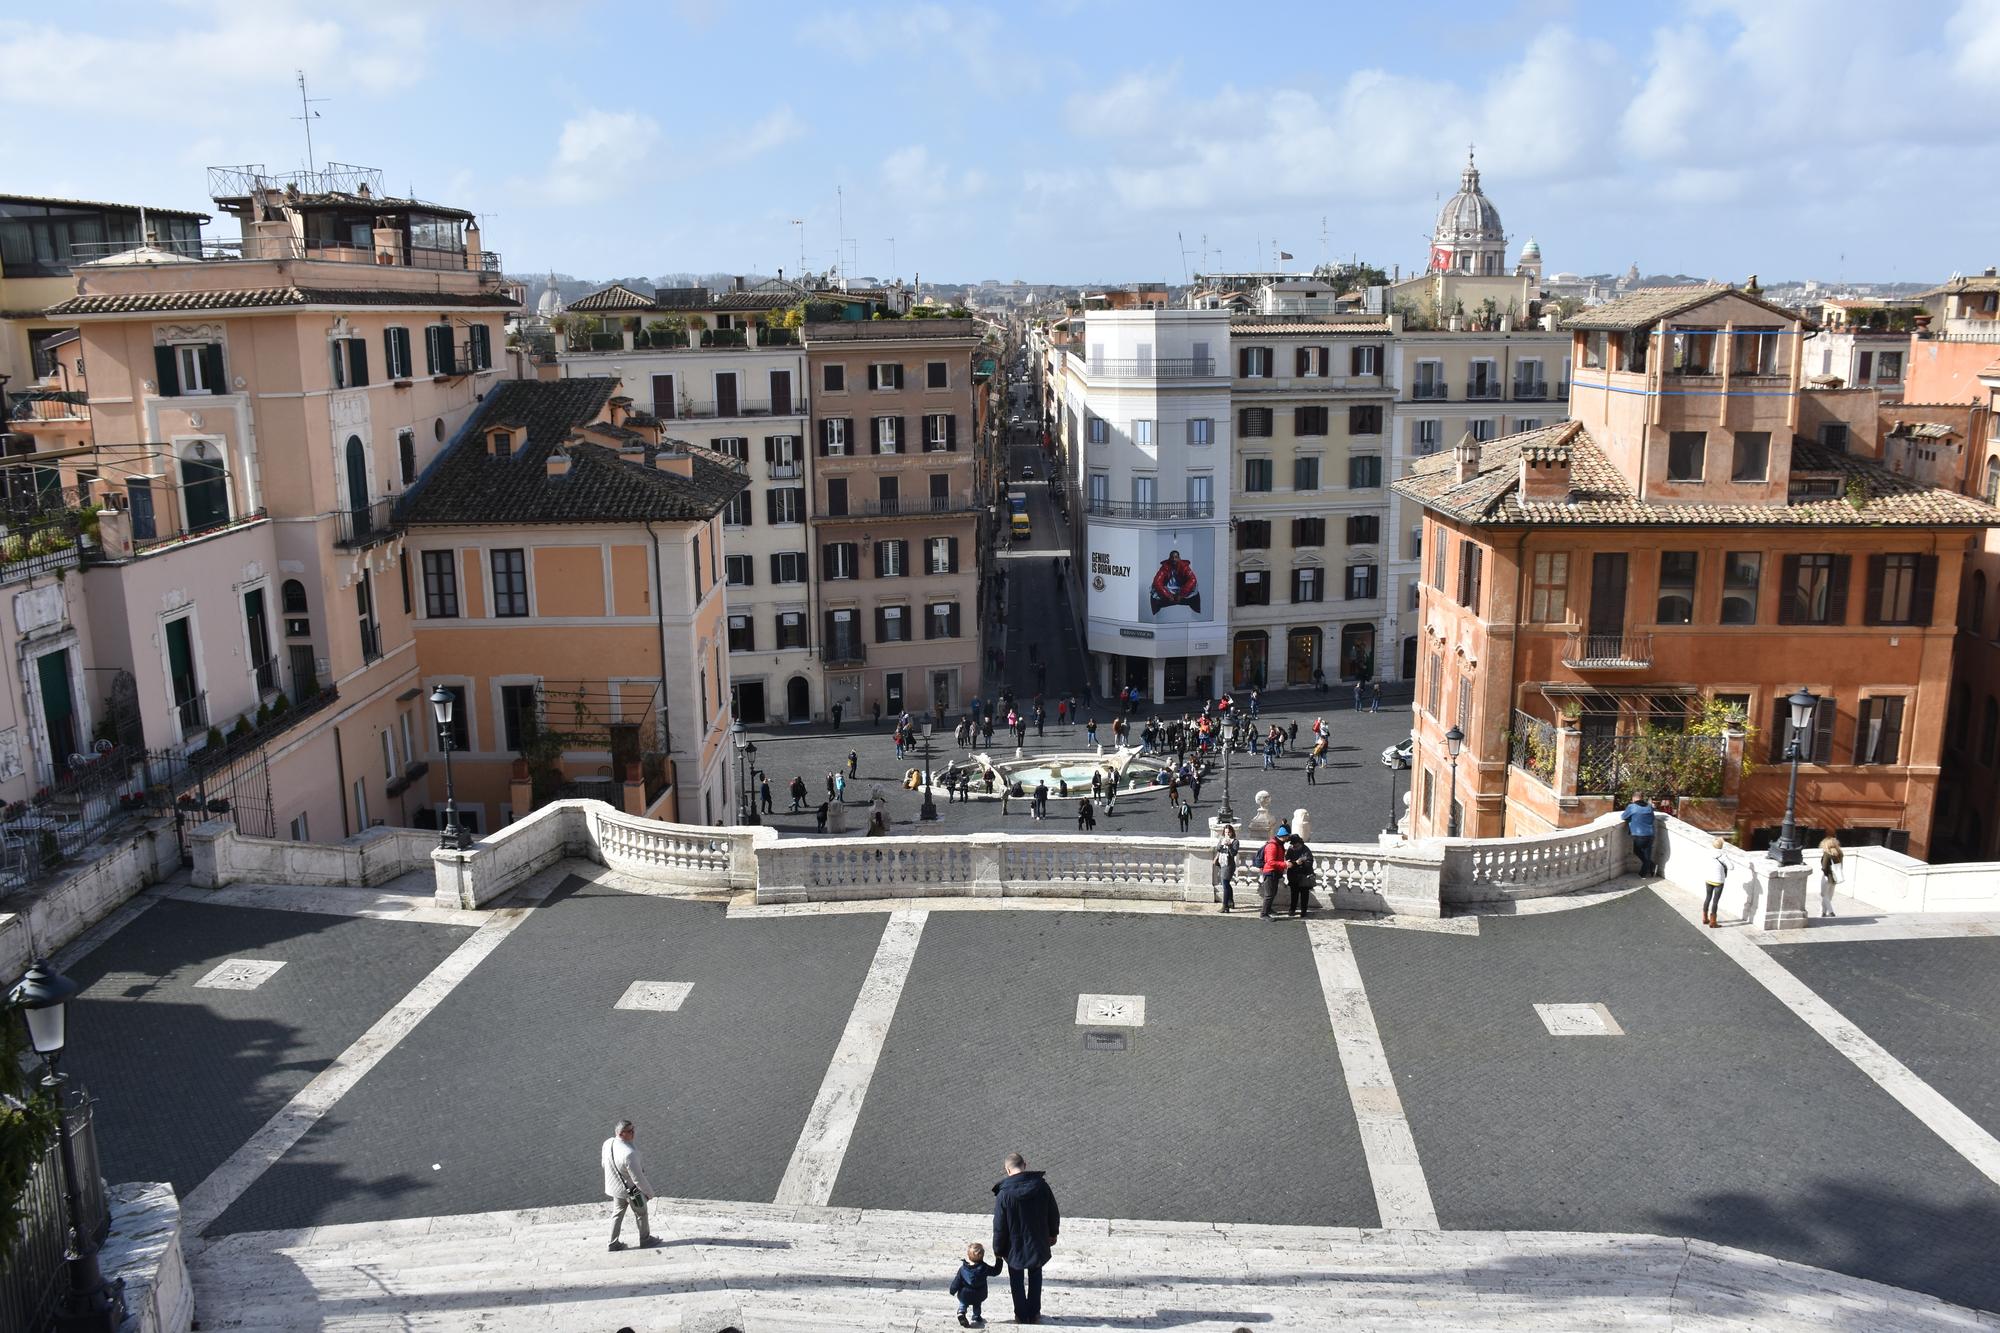 Les marches de la Piazza di Spagna de Rome sont presque vide... la capitale est sous quarantaine, comme toute l'Italie. [Keystone/Anadolu Agency - Baris Seckin]